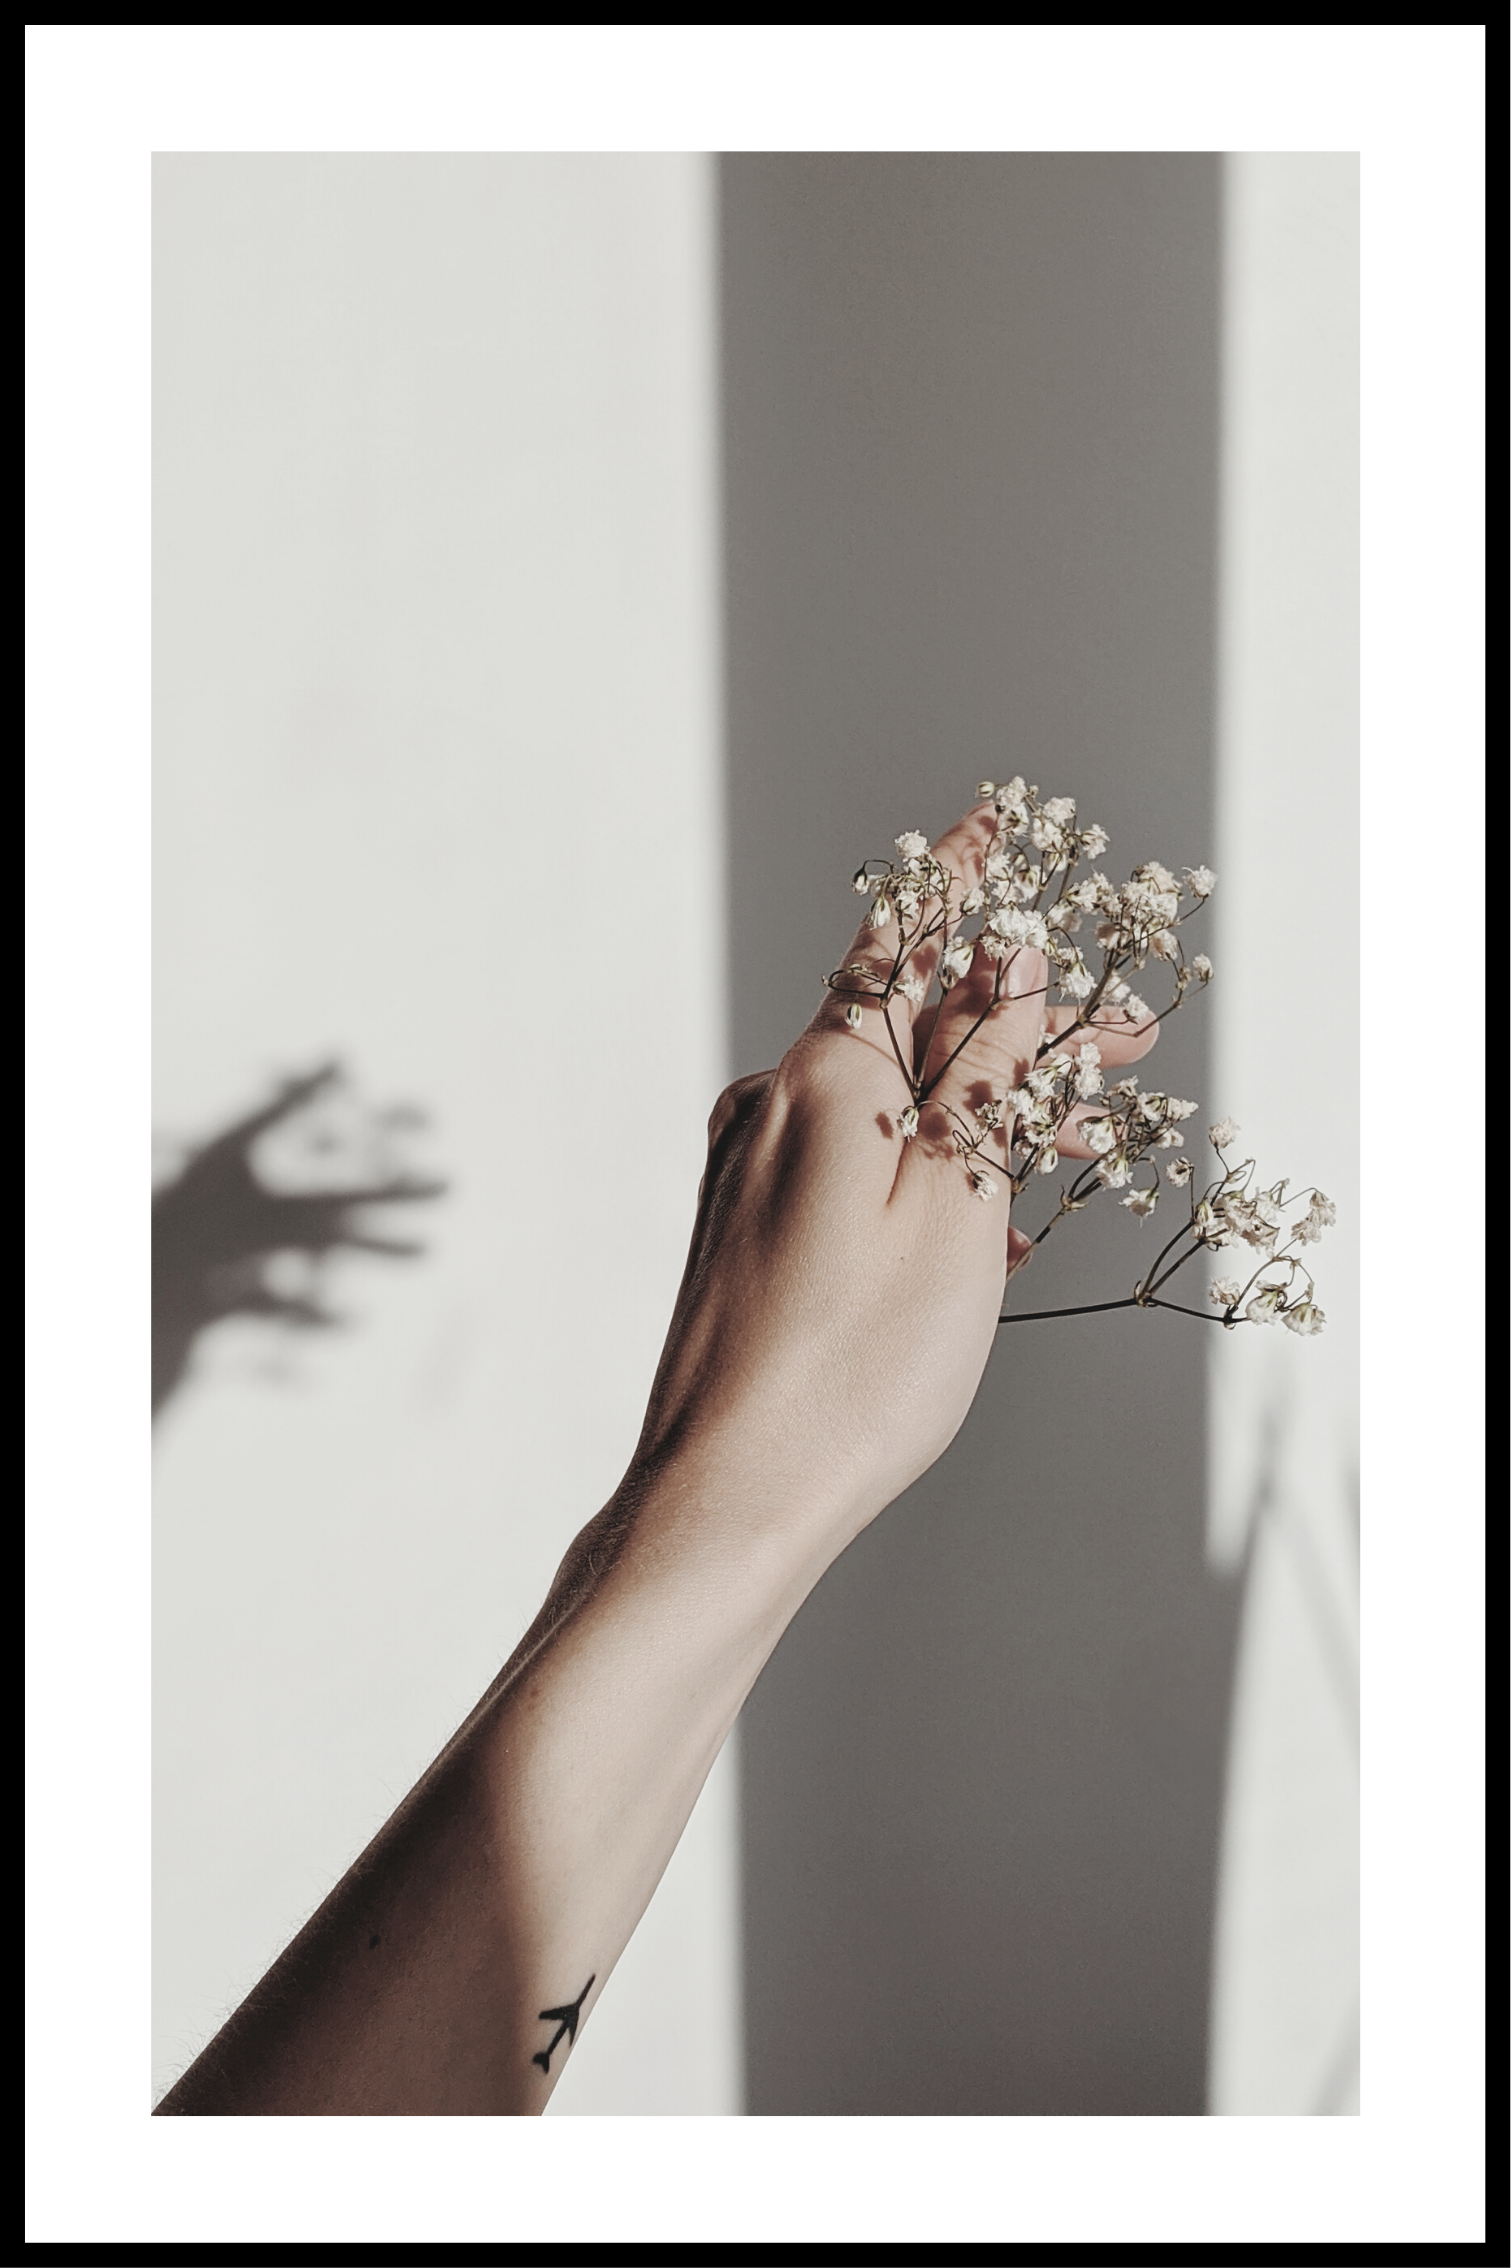 Hånd med blomst plakat